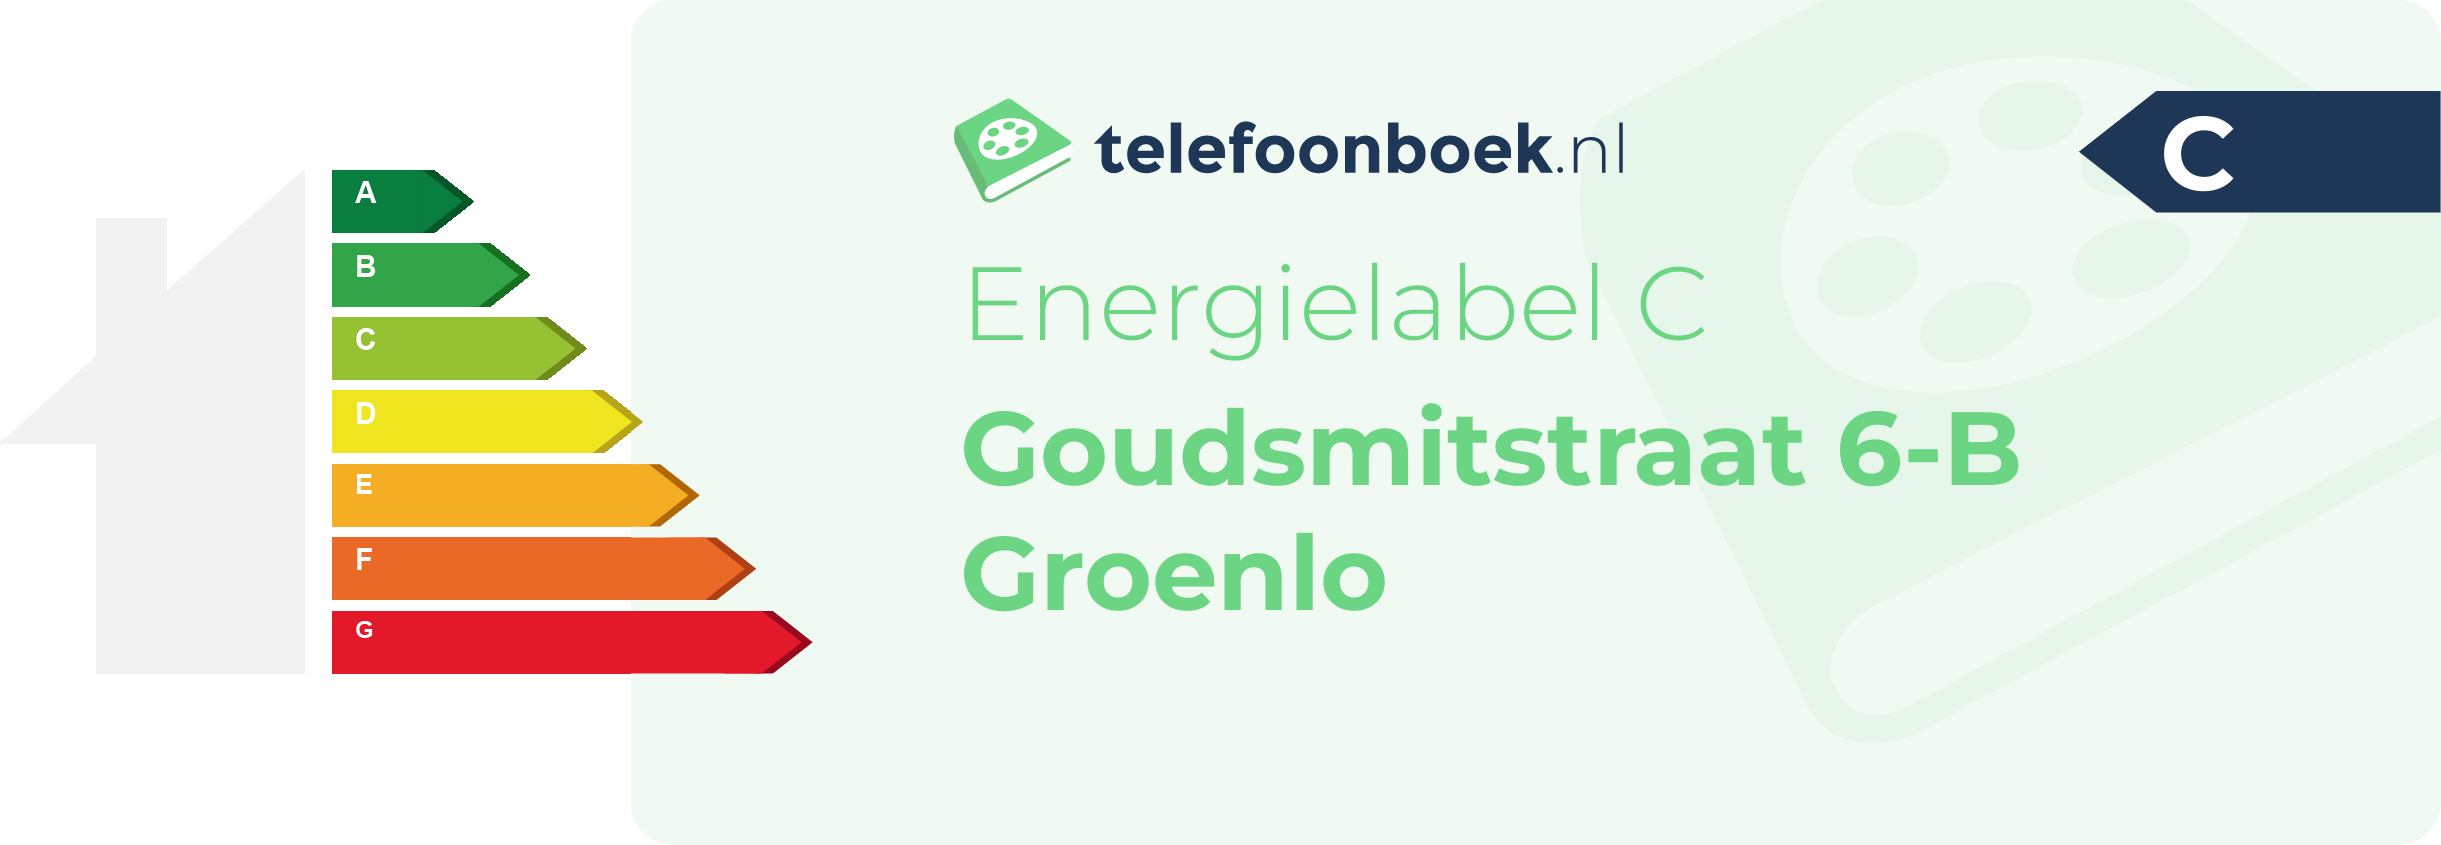 Energielabel Goudsmitstraat 6-B Groenlo